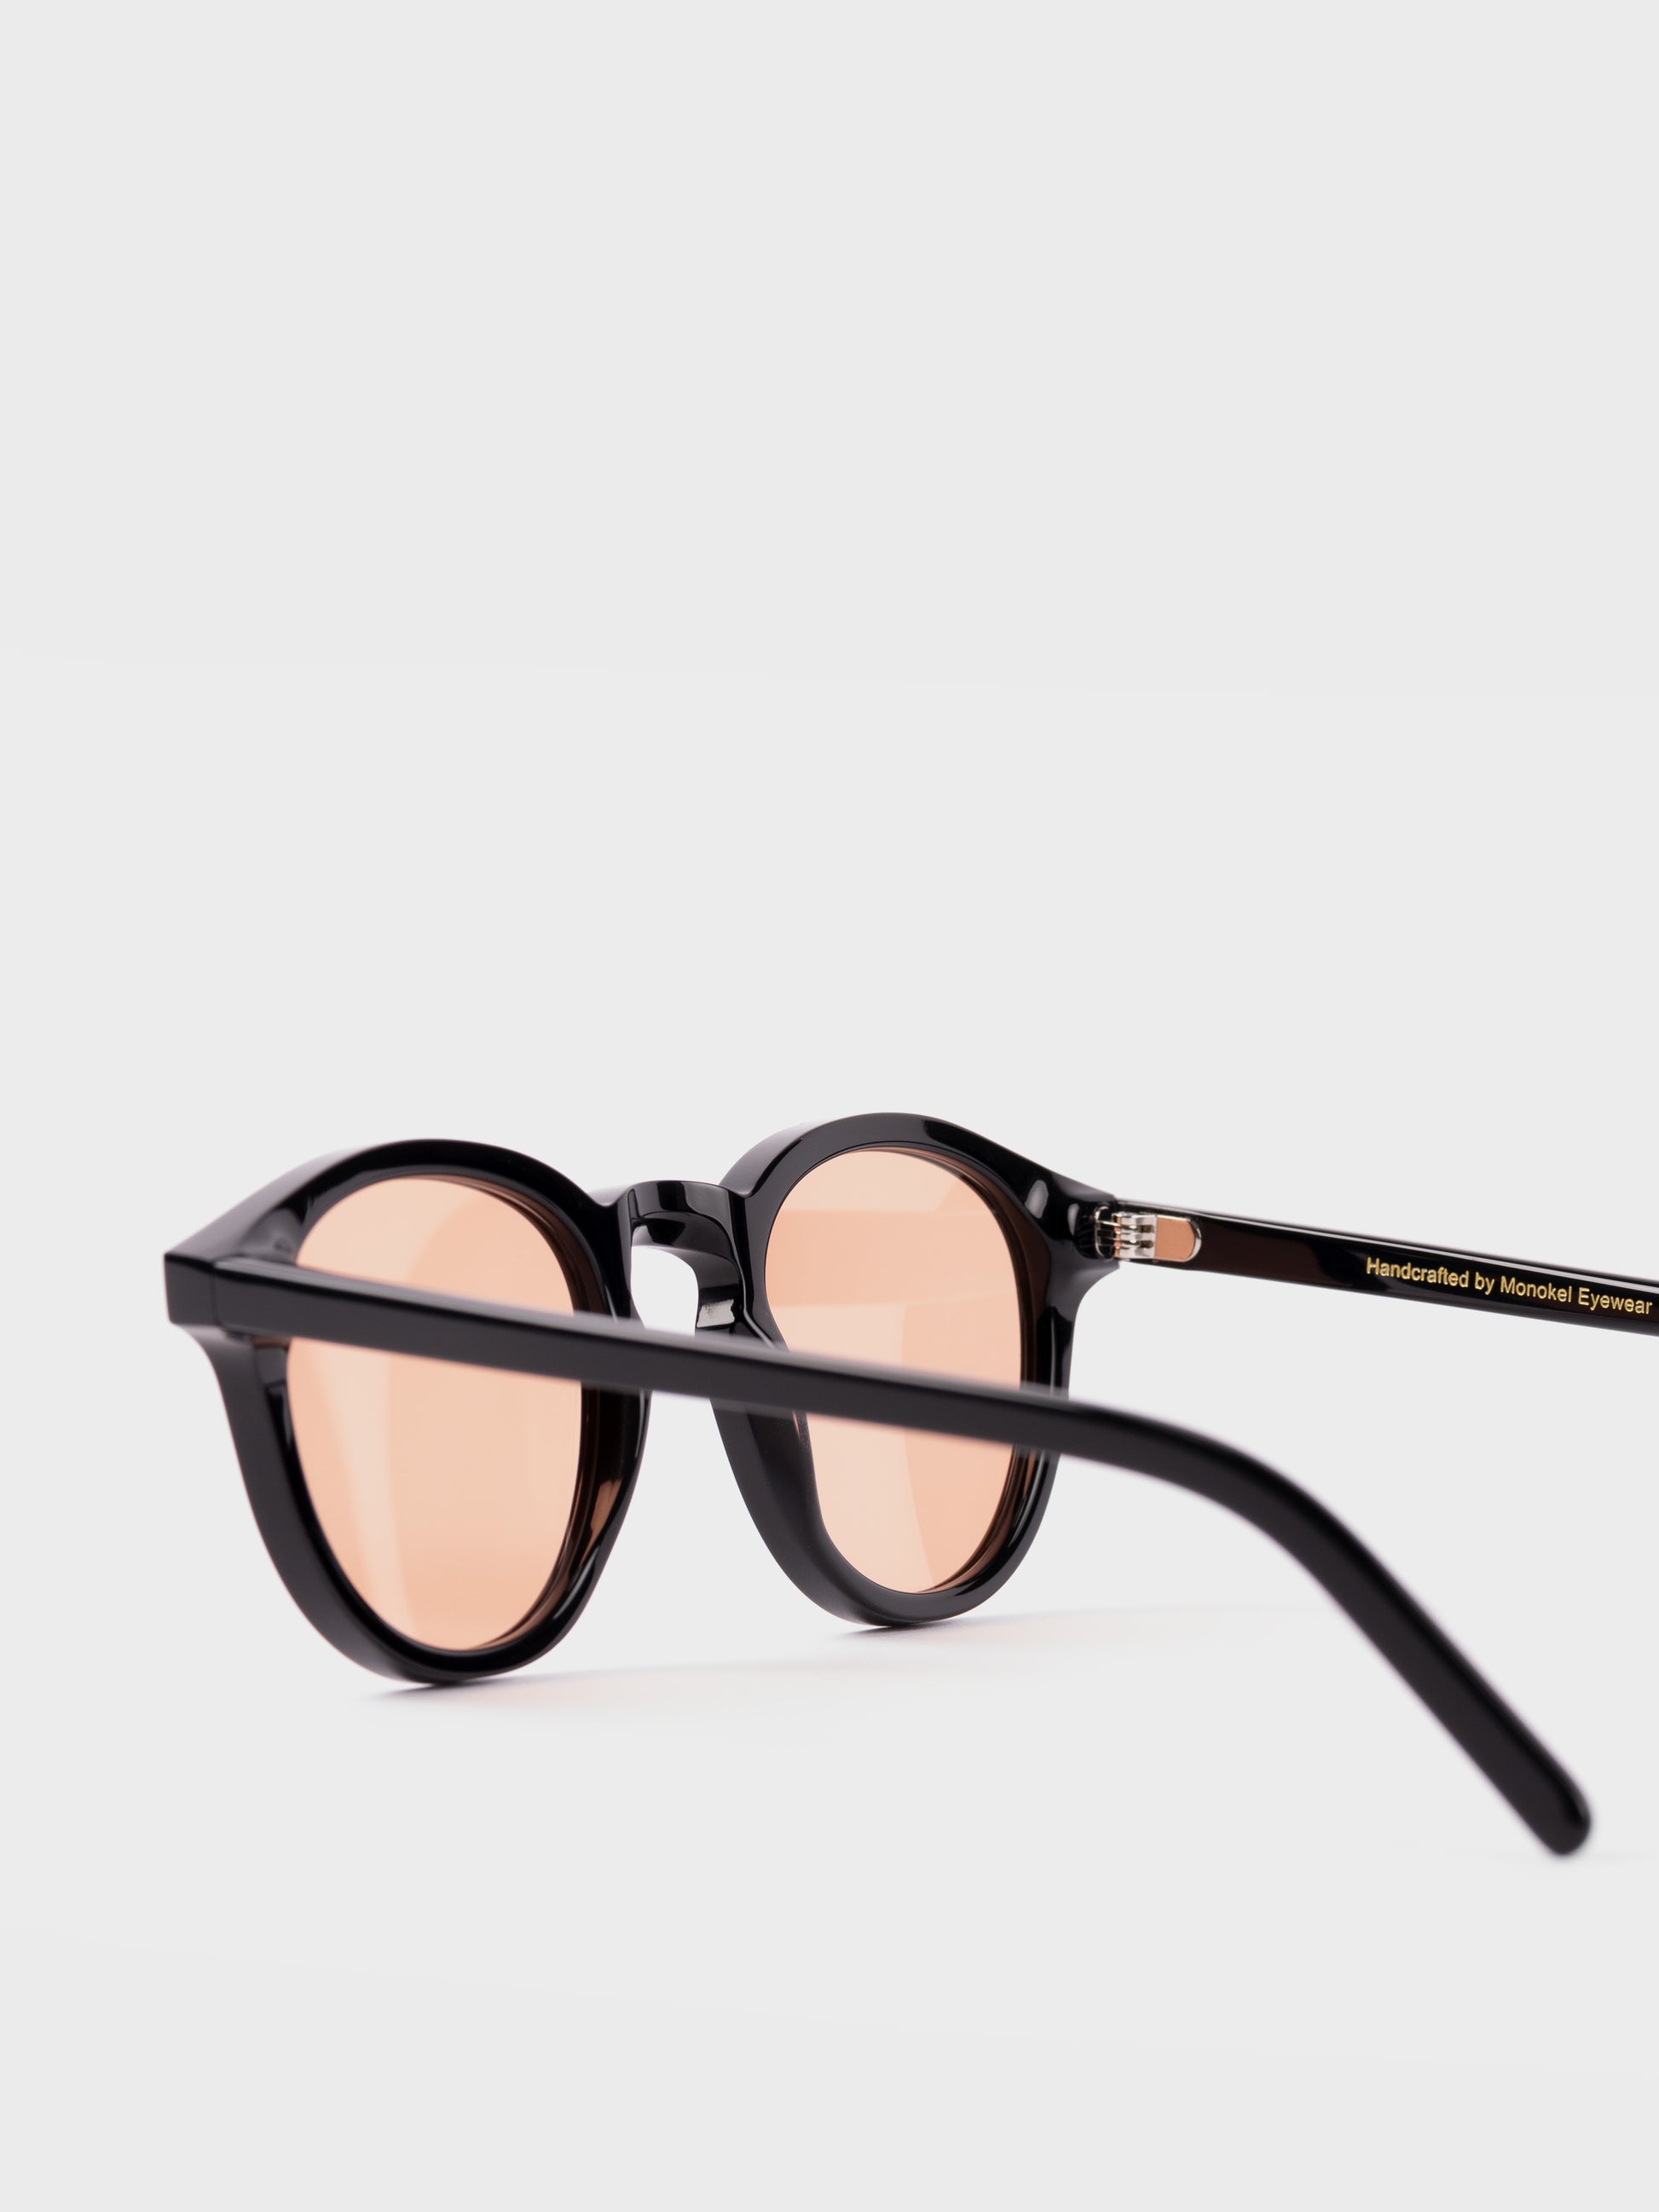 Monokel Sunglasses - Nelson Black/Orange Lens